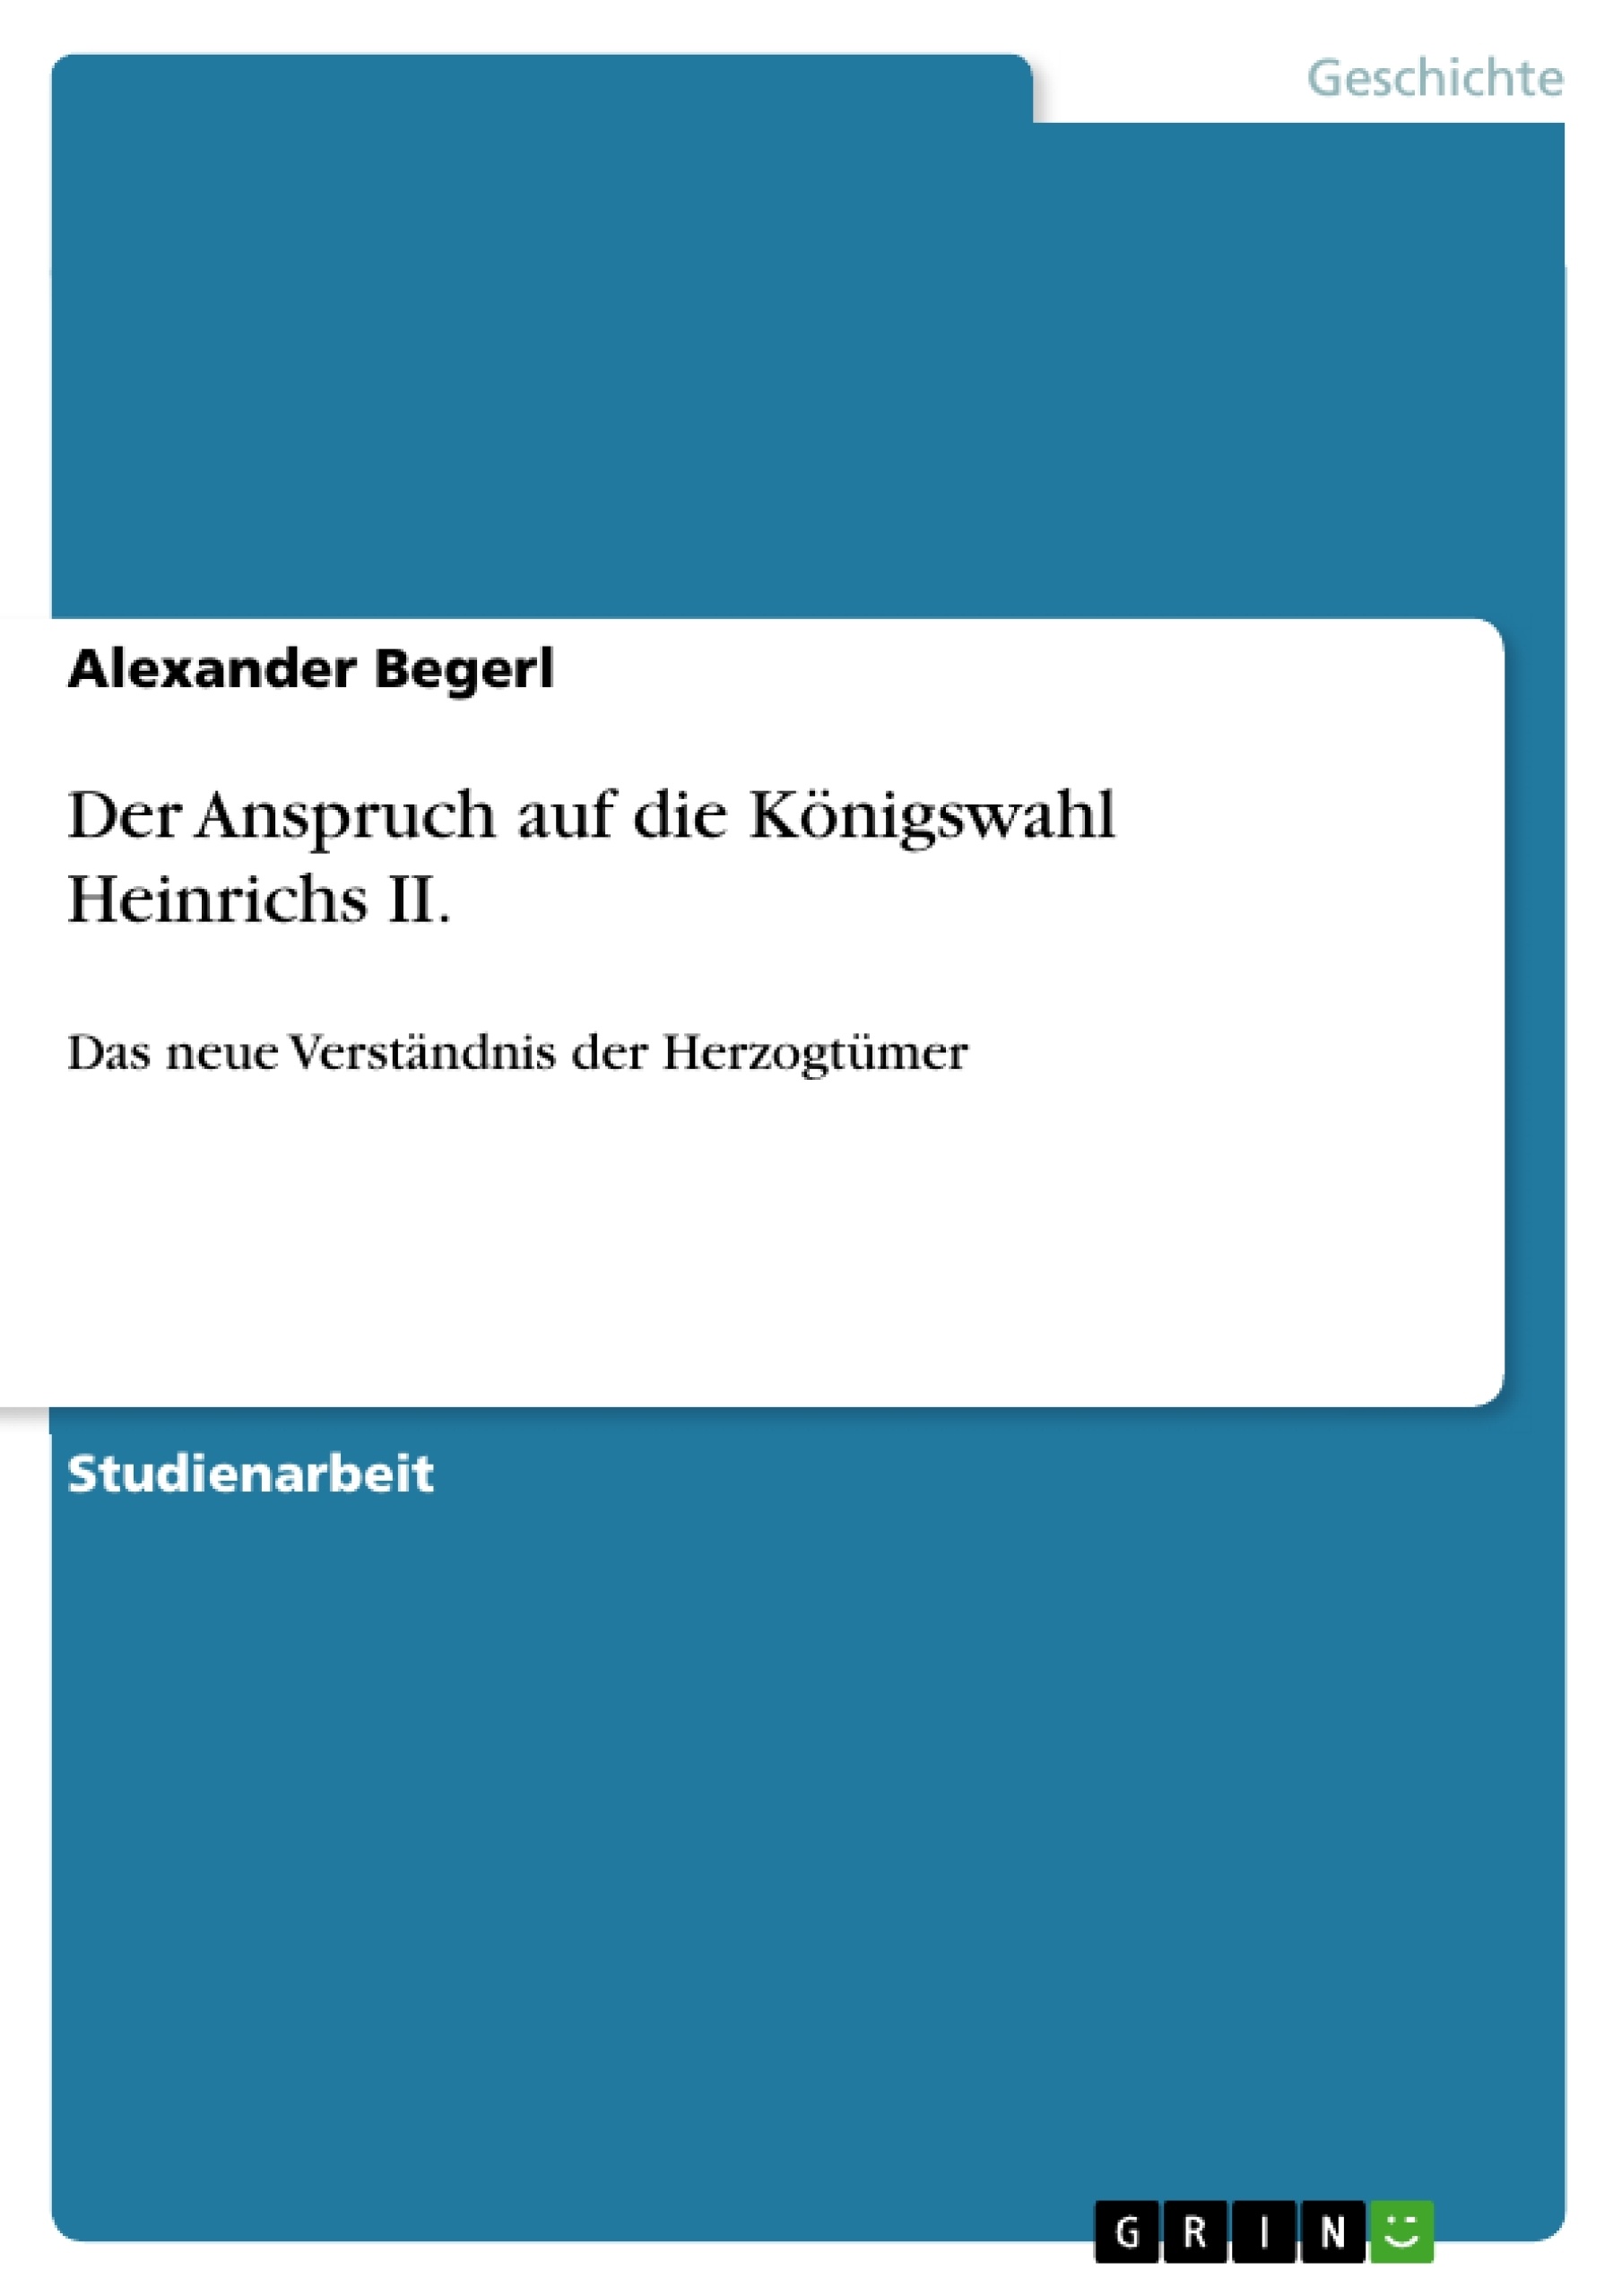 Title: Der Anspruch auf die Königswahl Heinrichs II.